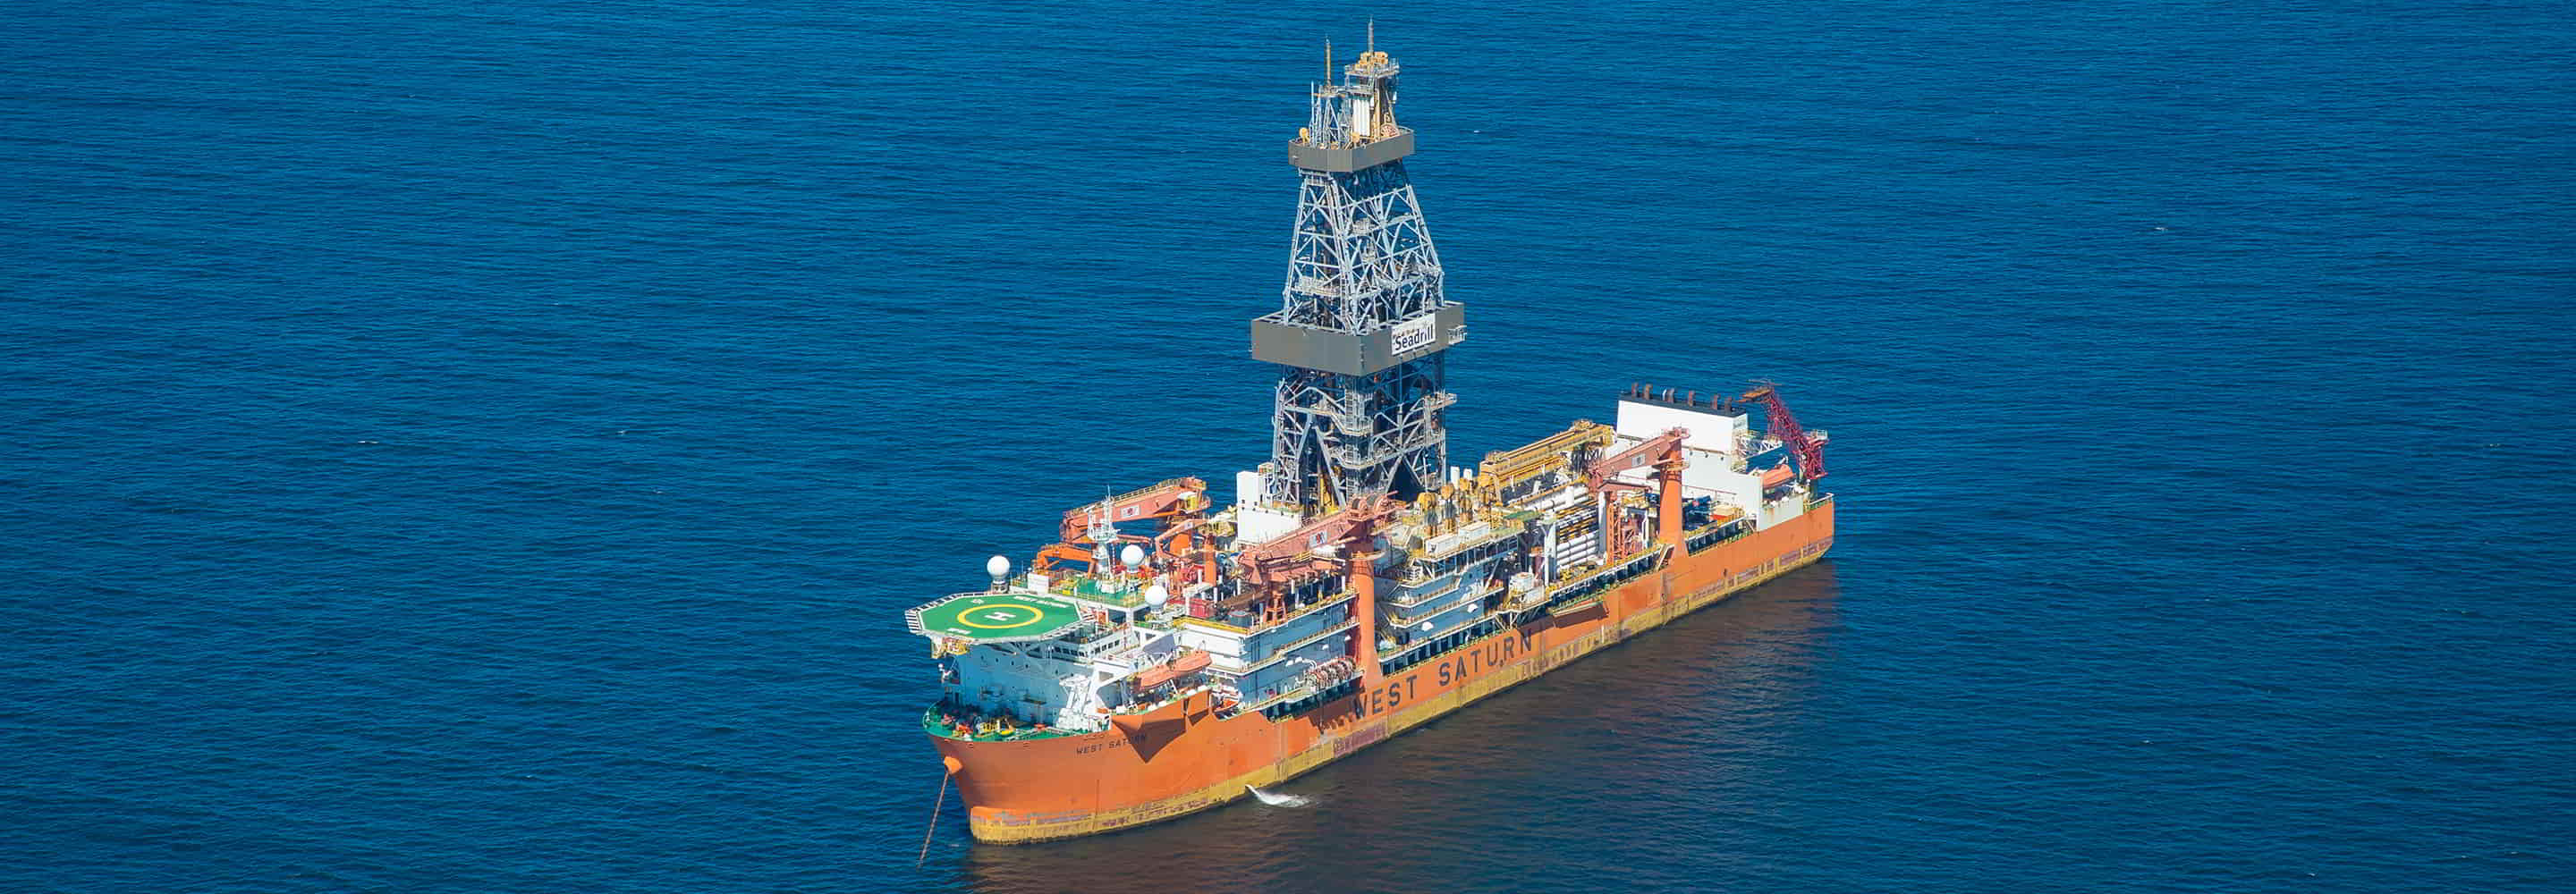 ExxonMobil kicks off drilling ops offshore Brazil using Seadrill drillship